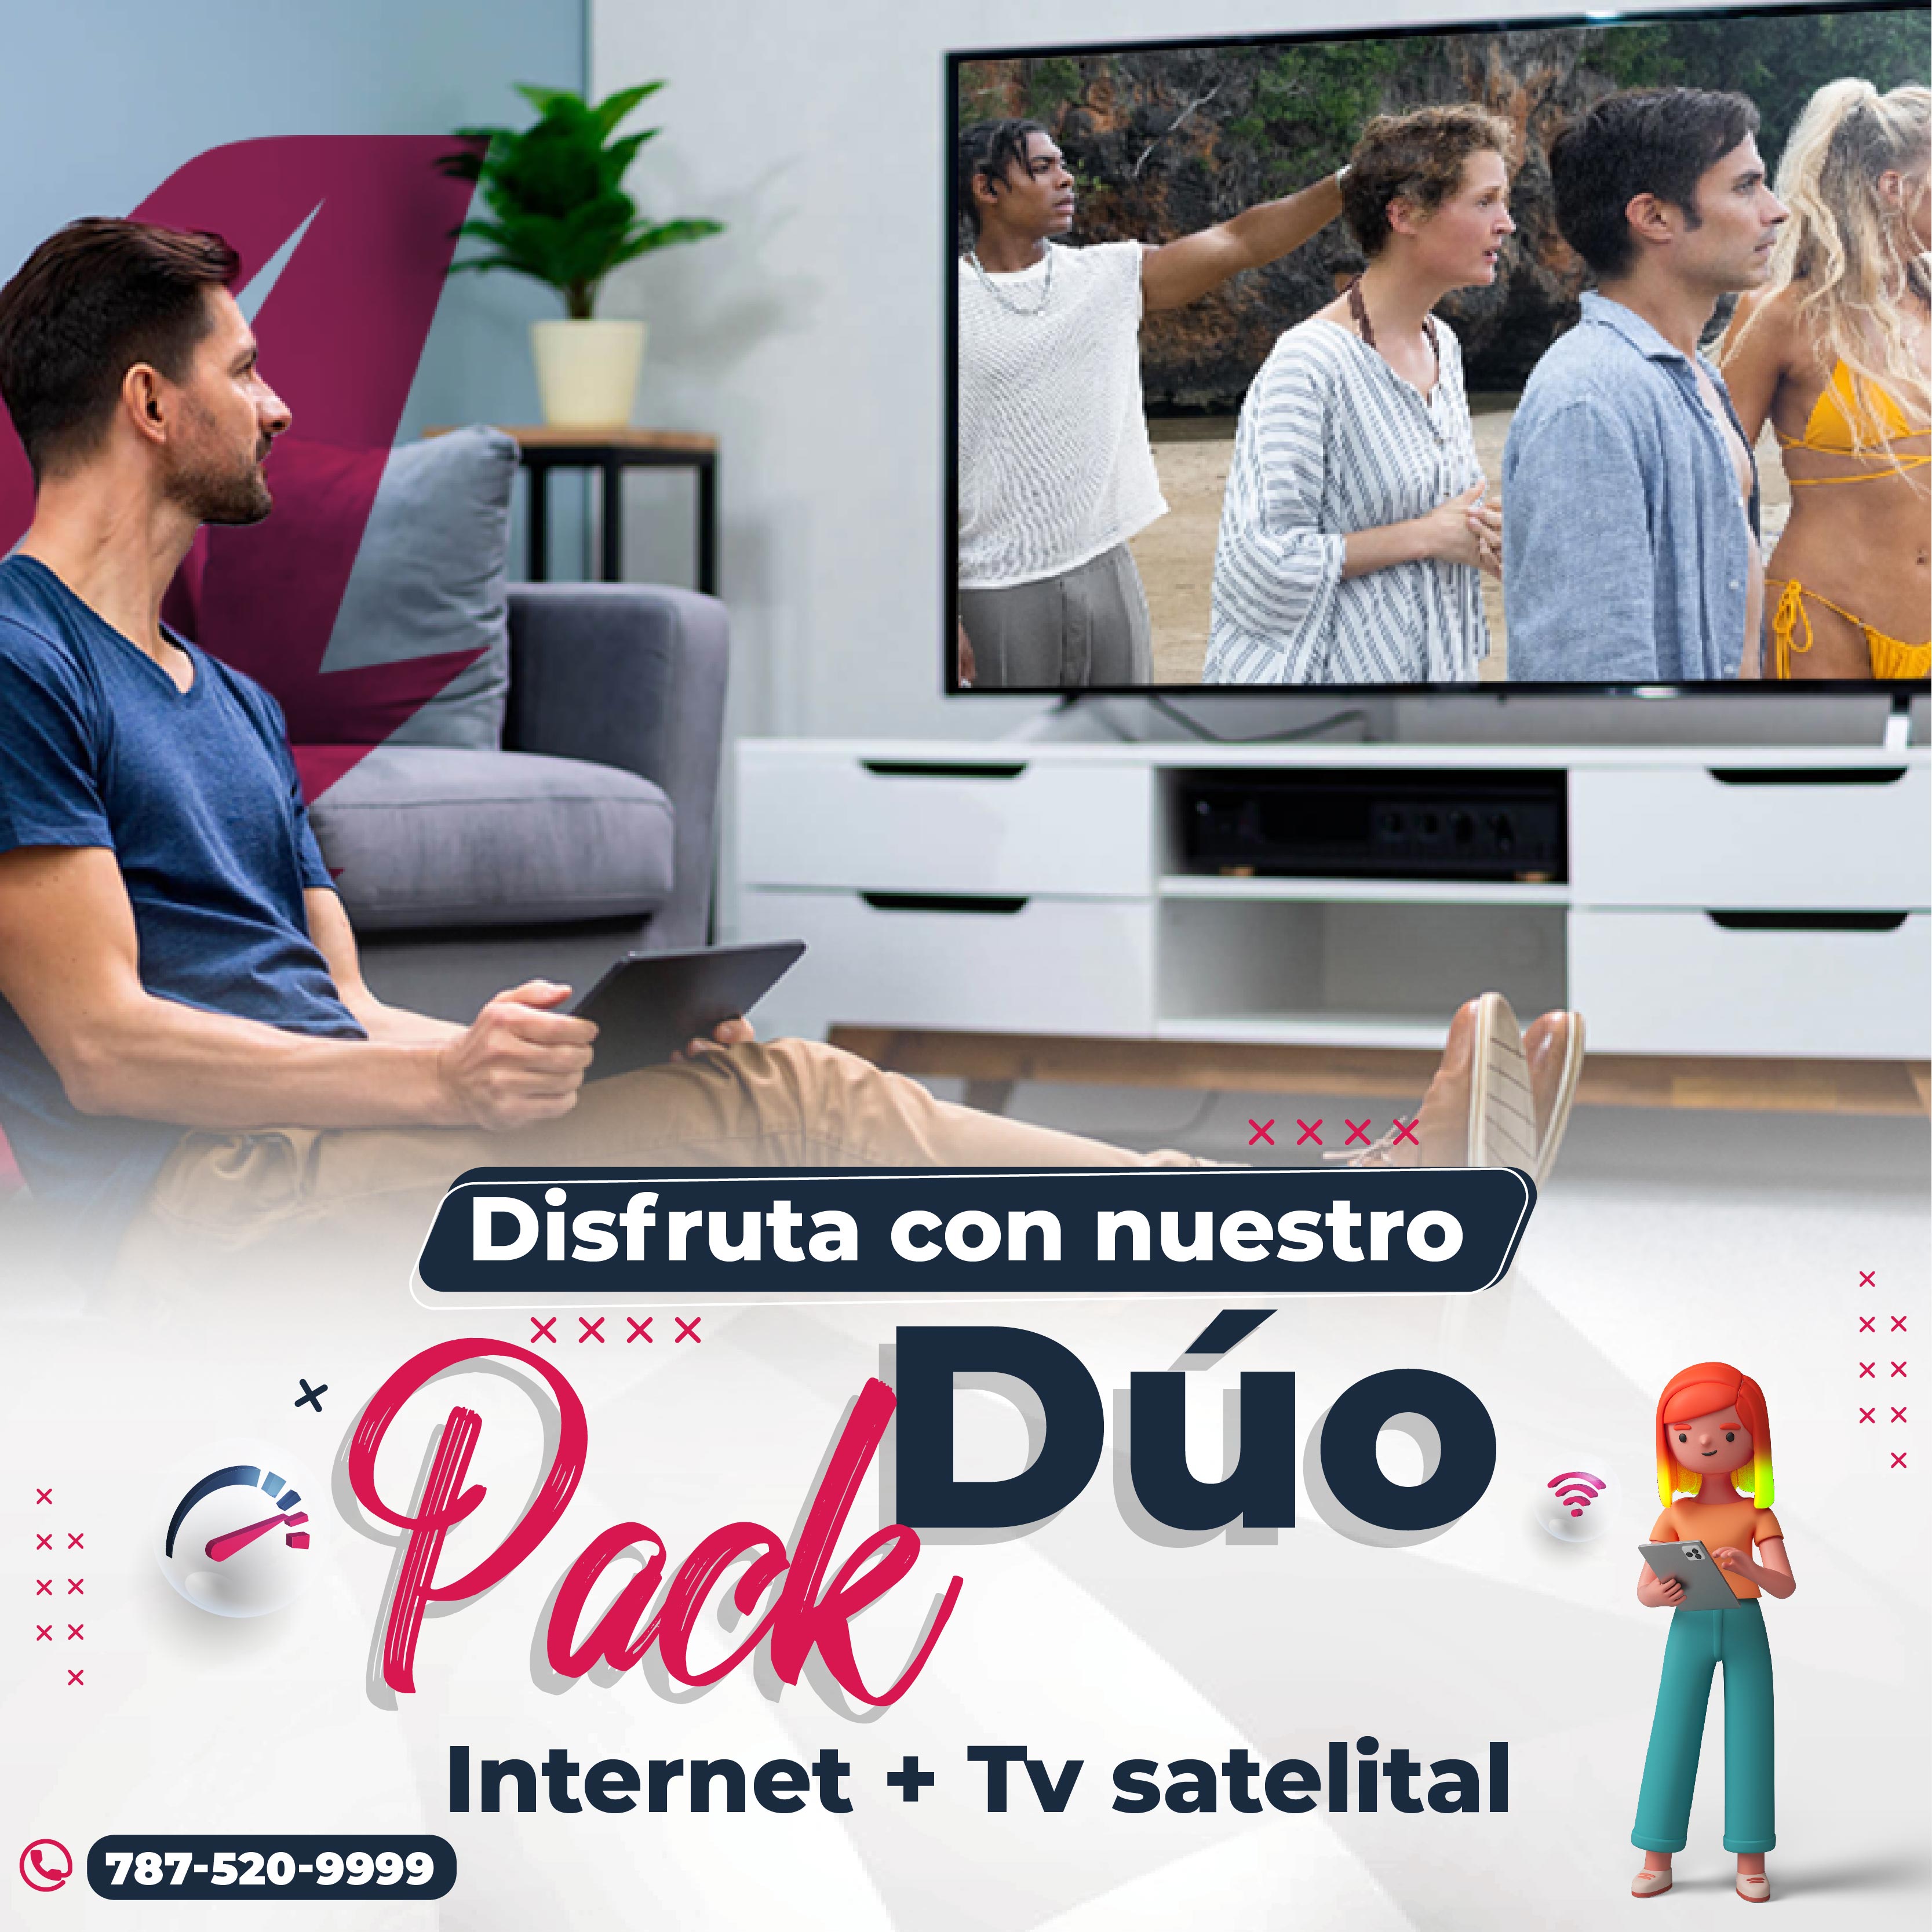 Internet y Tv Satelital Duo Pack